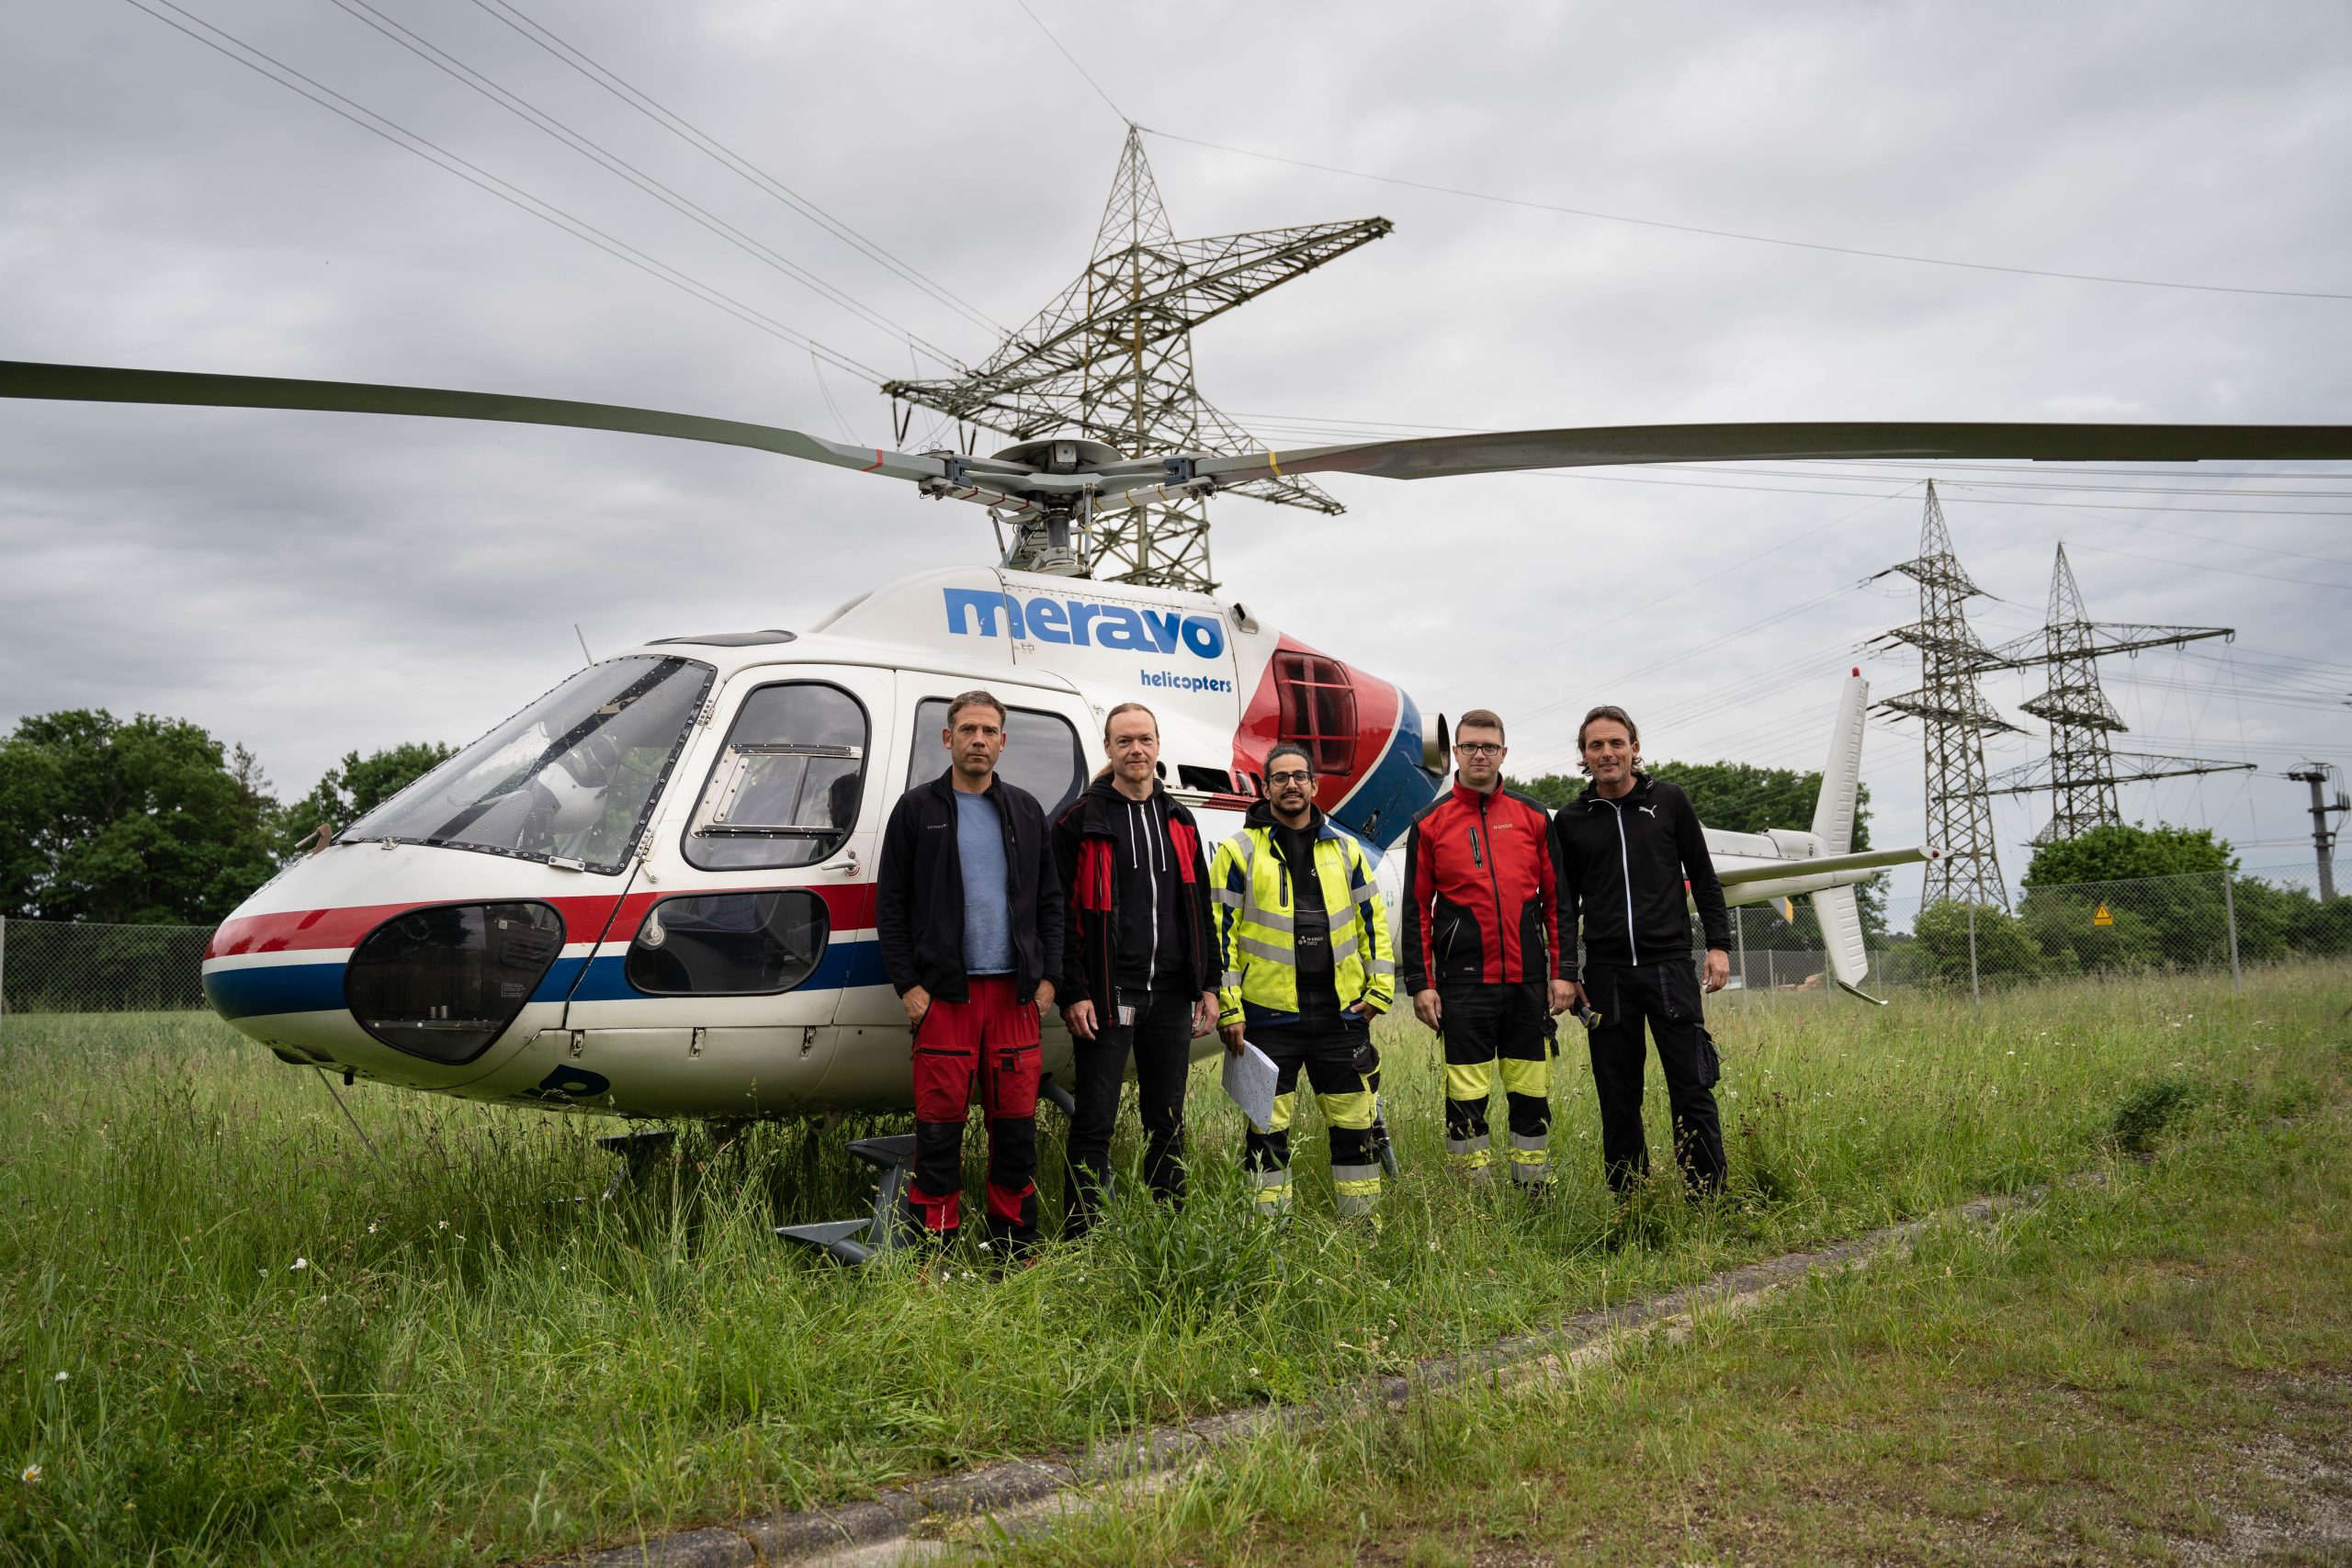 Unterwegs im Nürnberger Land: Leitungsüberprüfung vom Helikopter aus